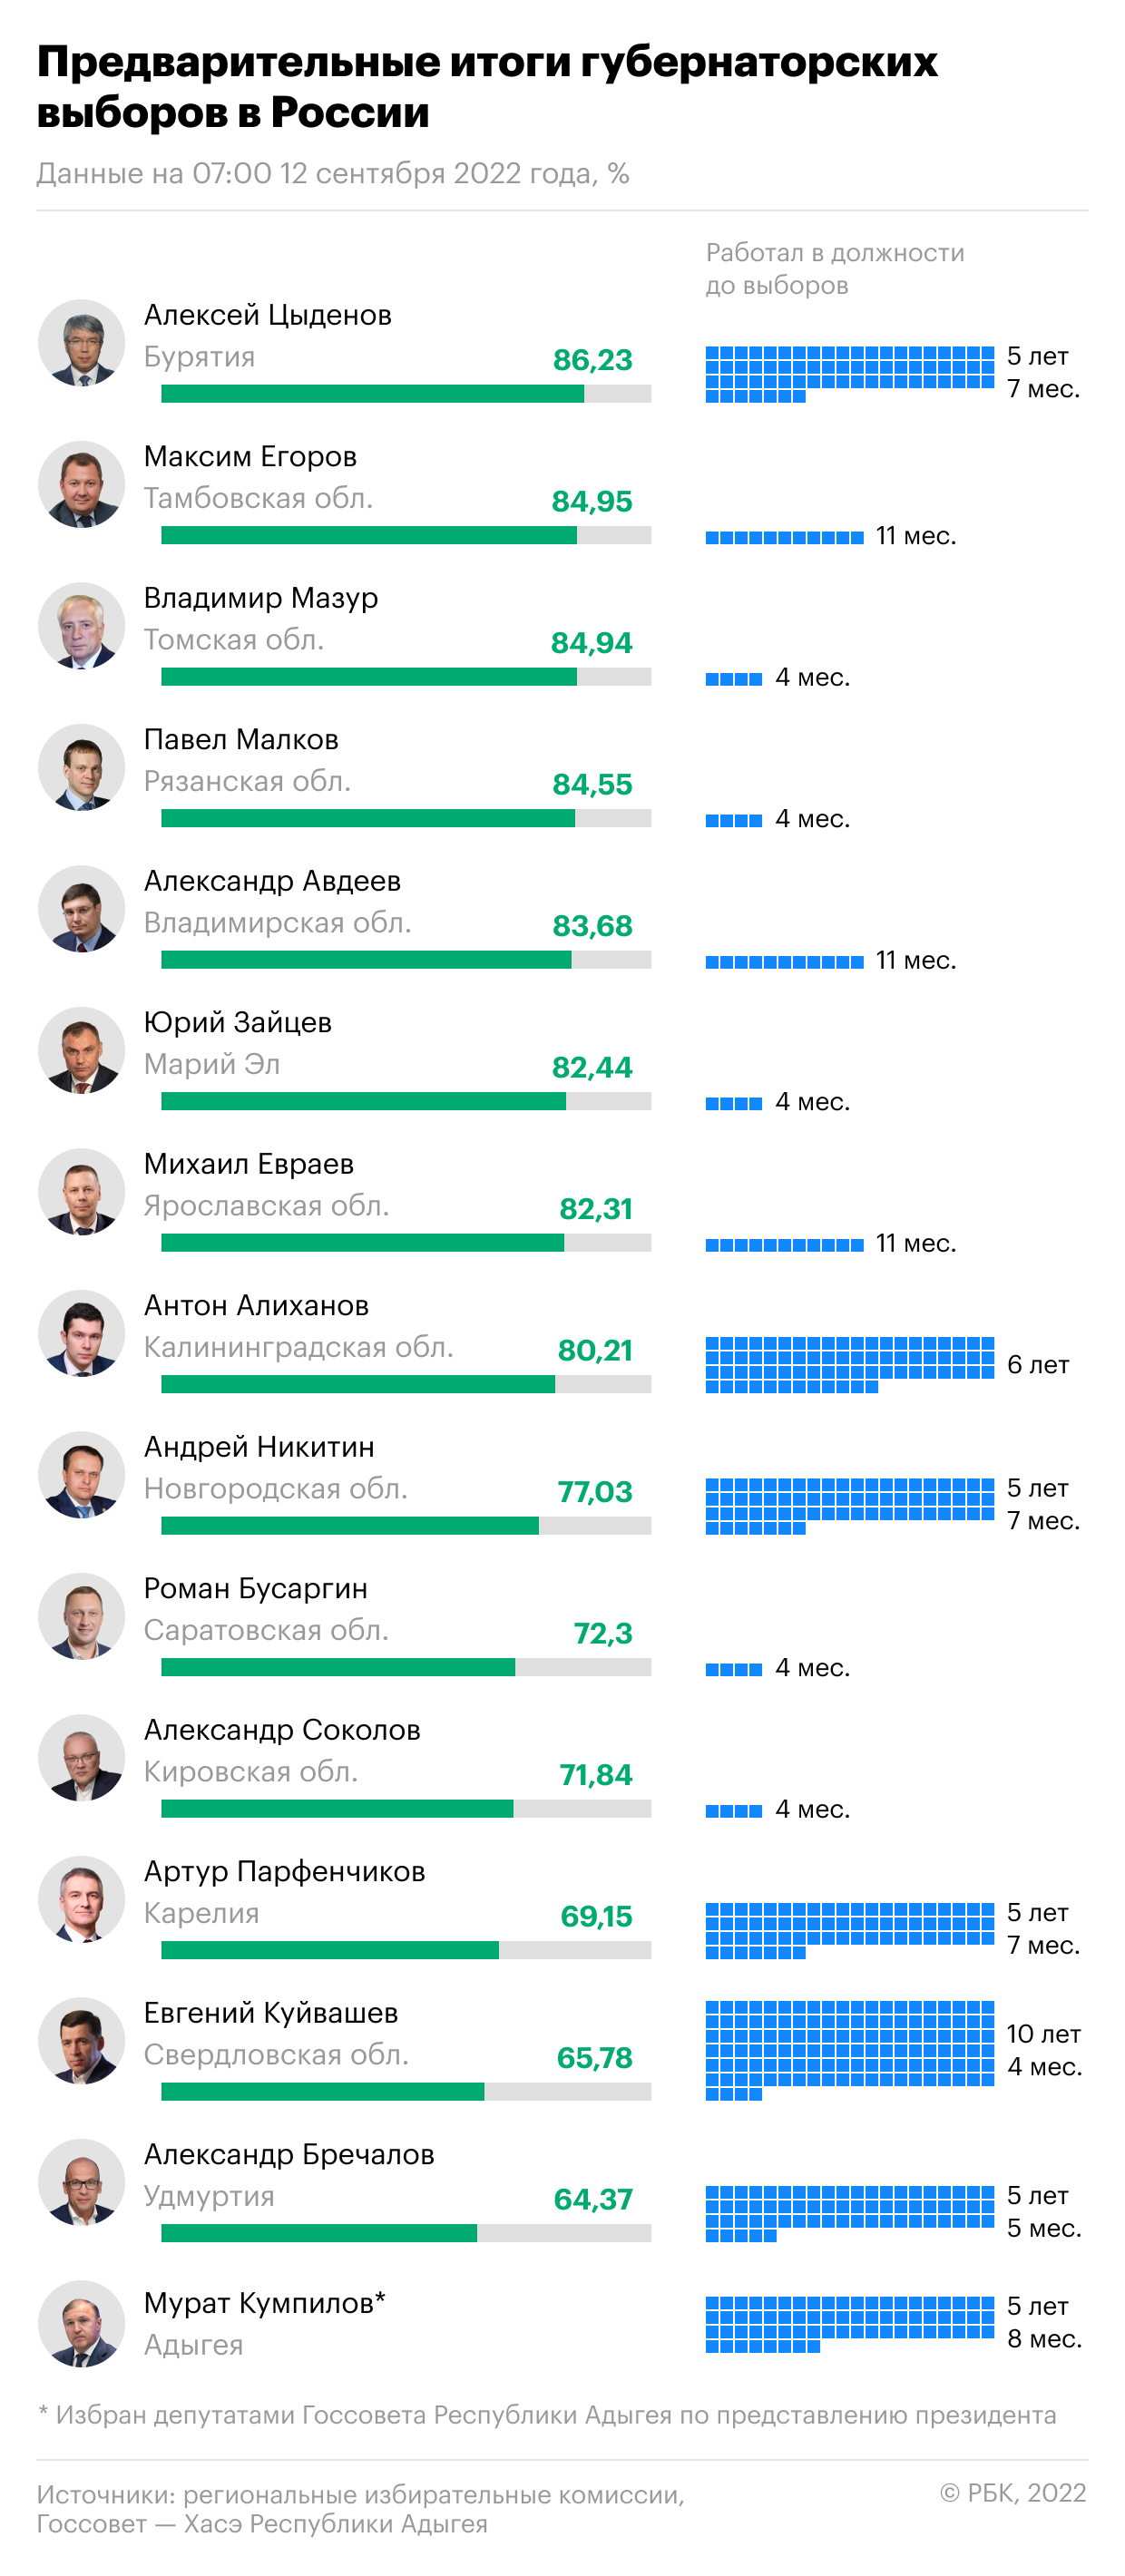 Как закончились губернаторские выборы в России. Инфографика